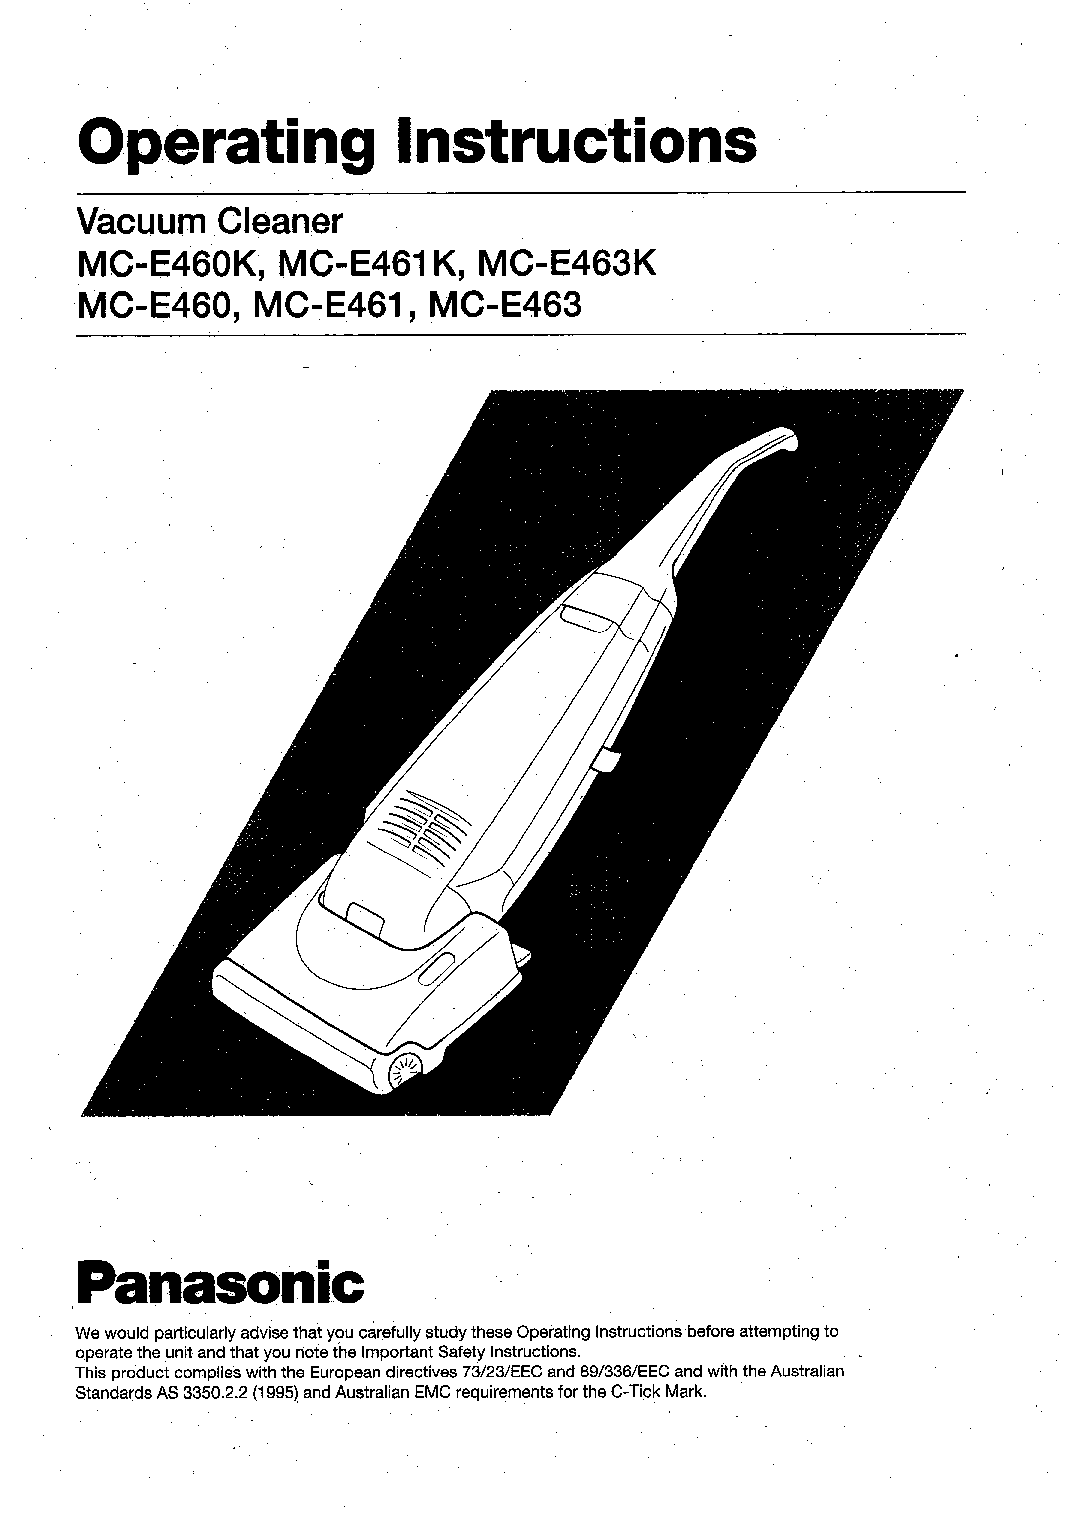 Panasonic MC-E463K, MC-E461K, MC-E460K User Manual